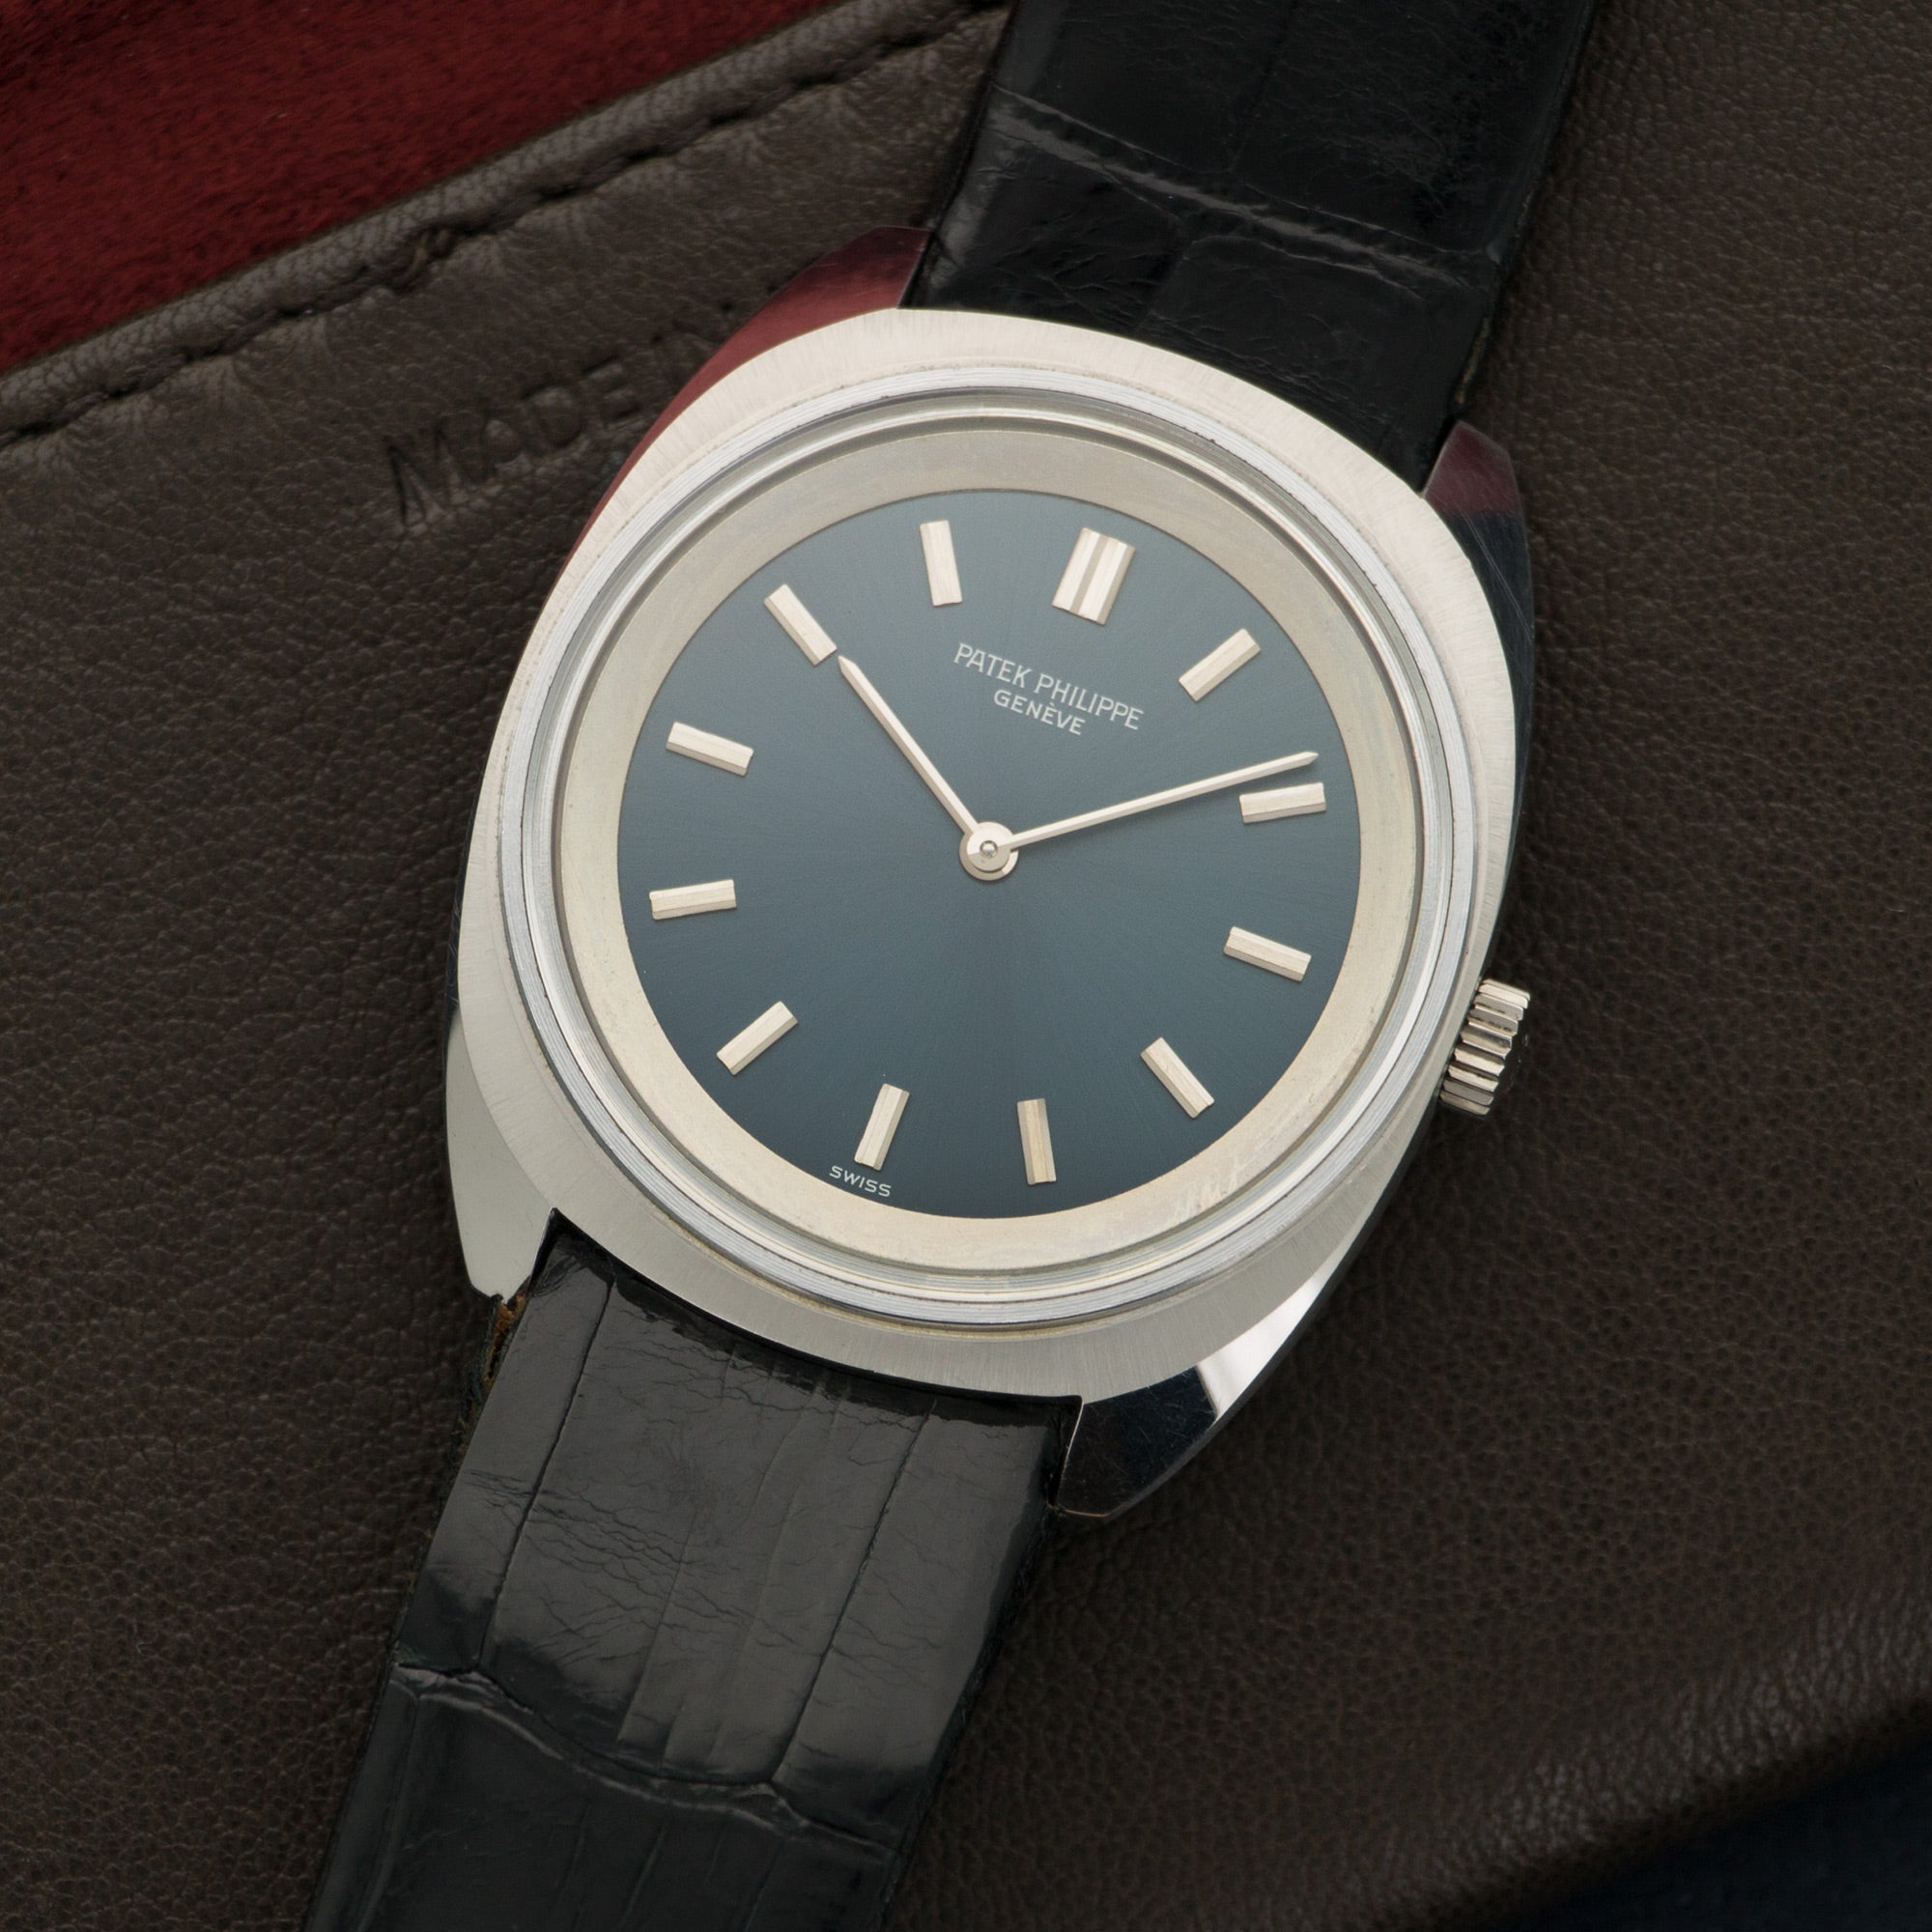 Patek Philippe - Patek Philippe Stainless Steel Waterproof Watch Ref. 3579 - The Keystone Watches